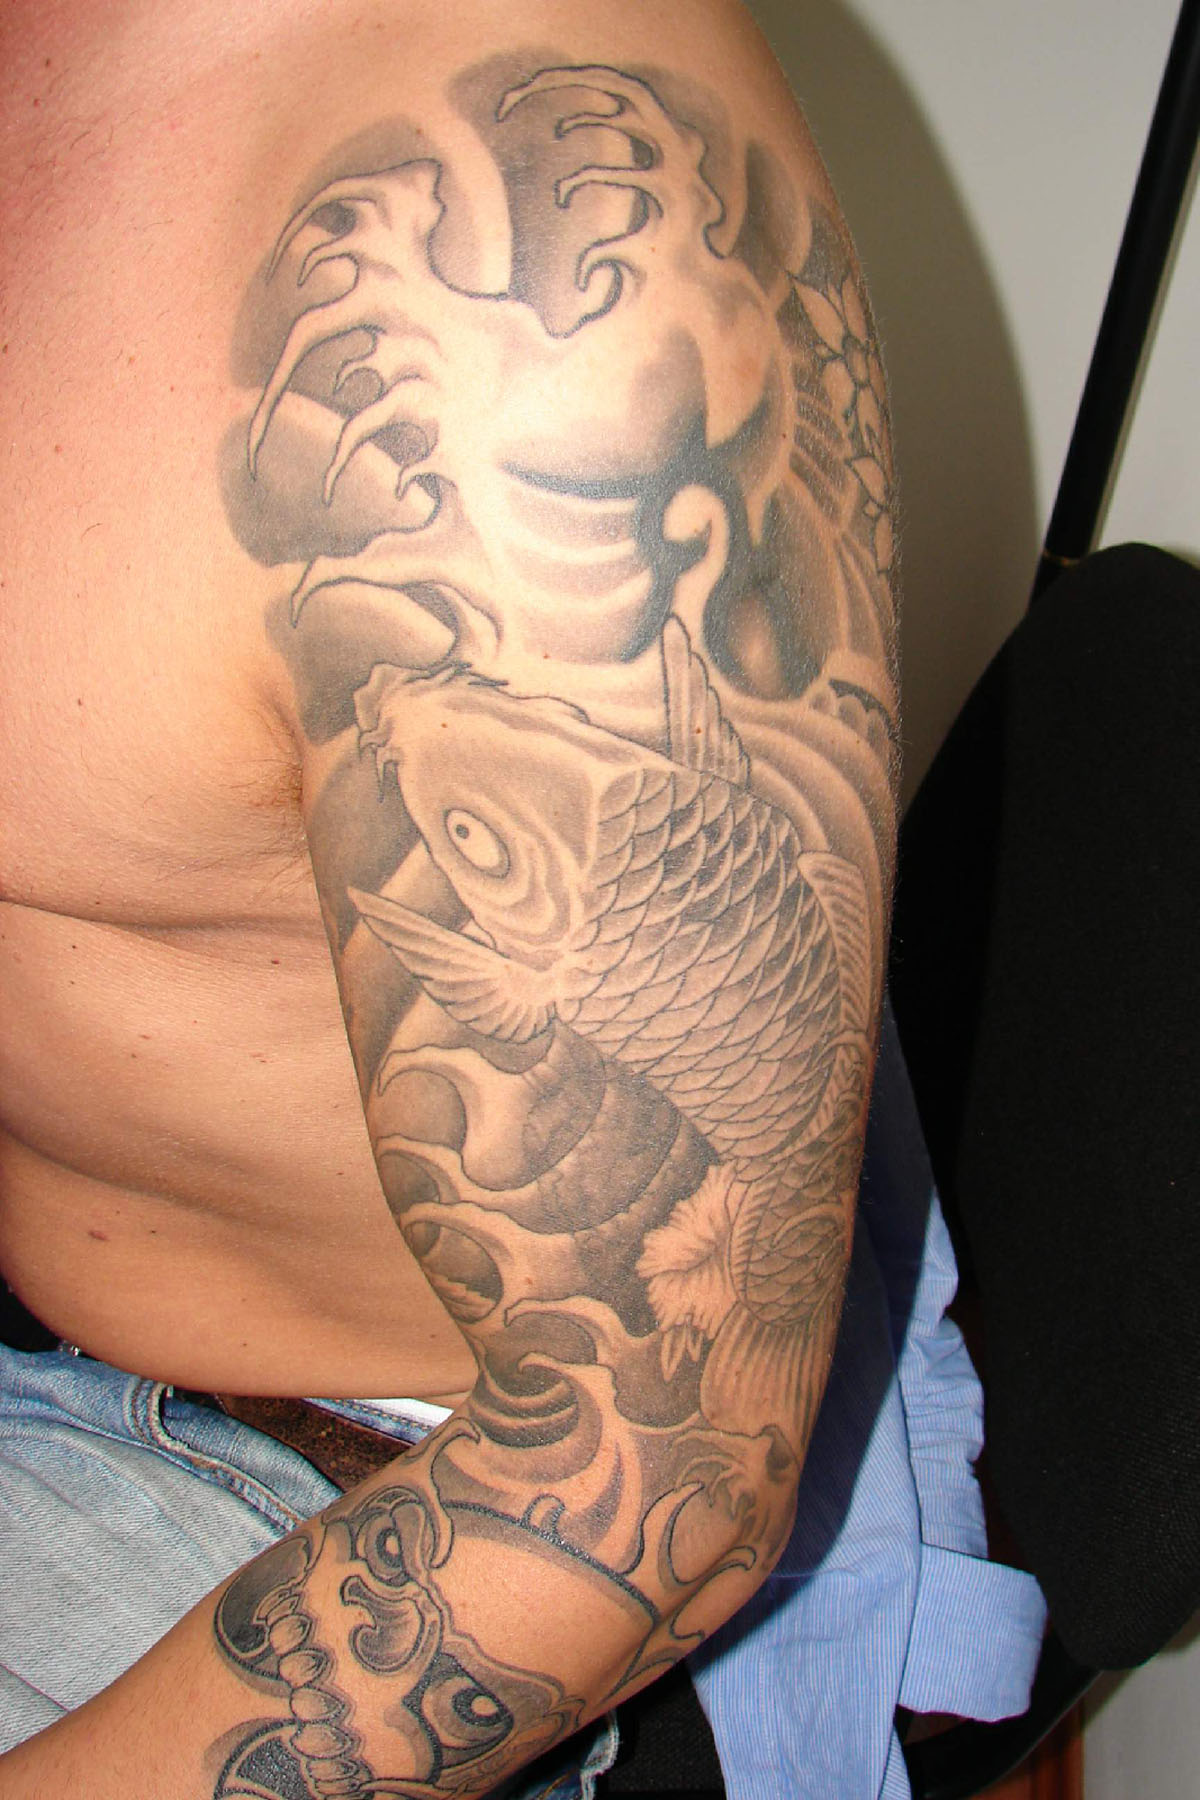 Tattooentfernung am Arm vor der Behandlung